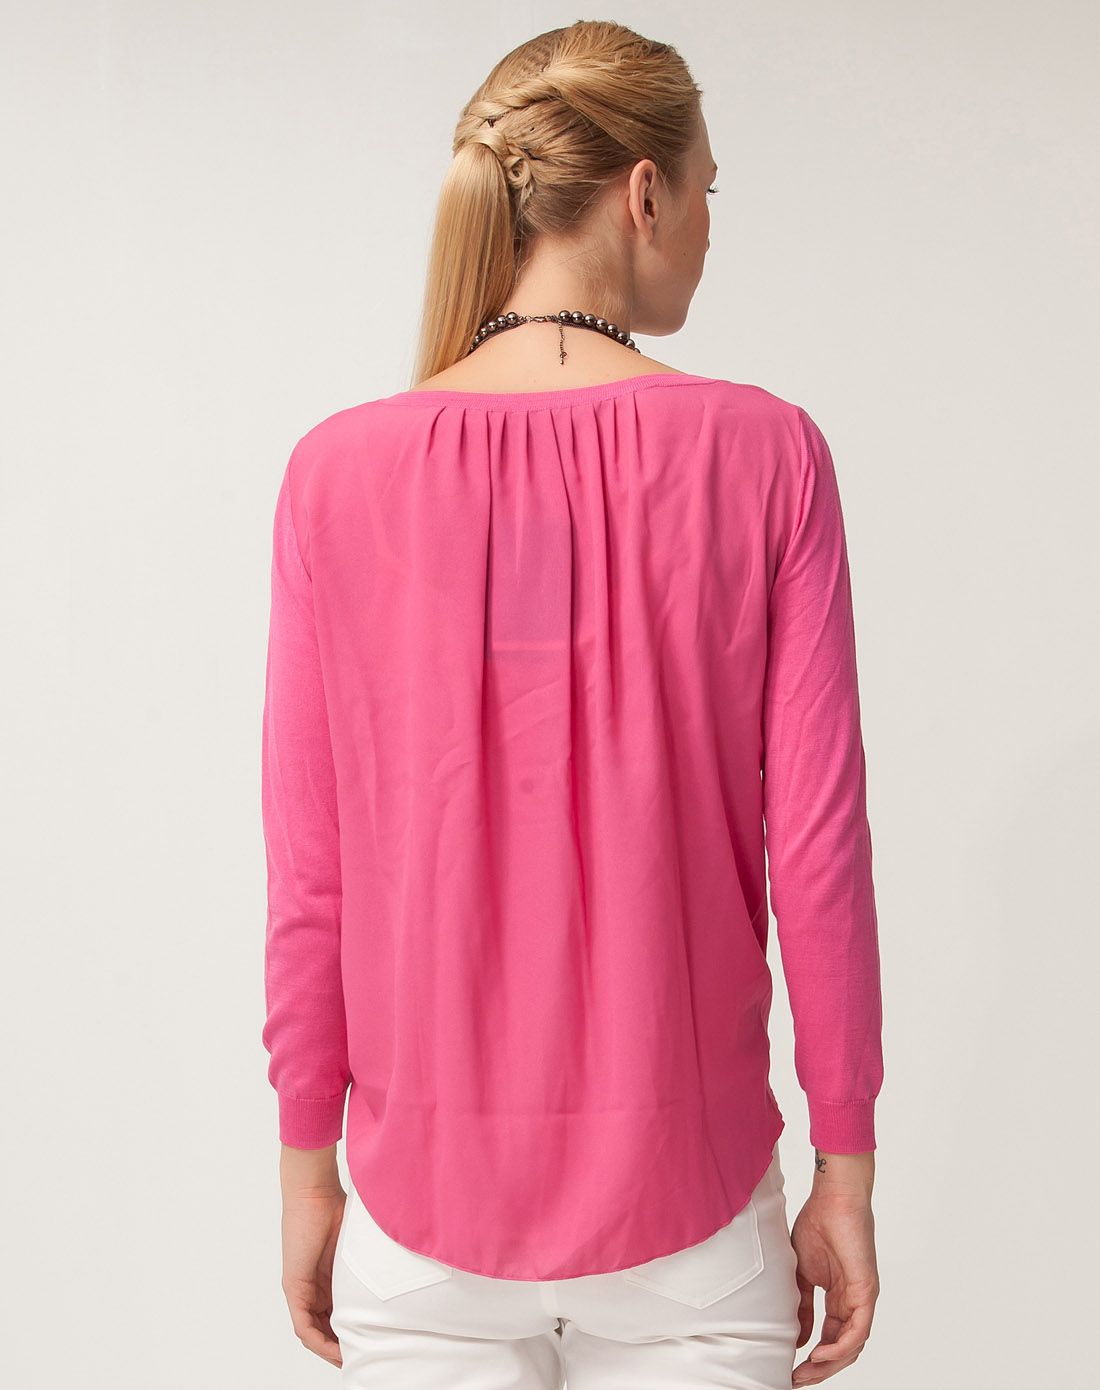 桃红色色简约时尚针织衫